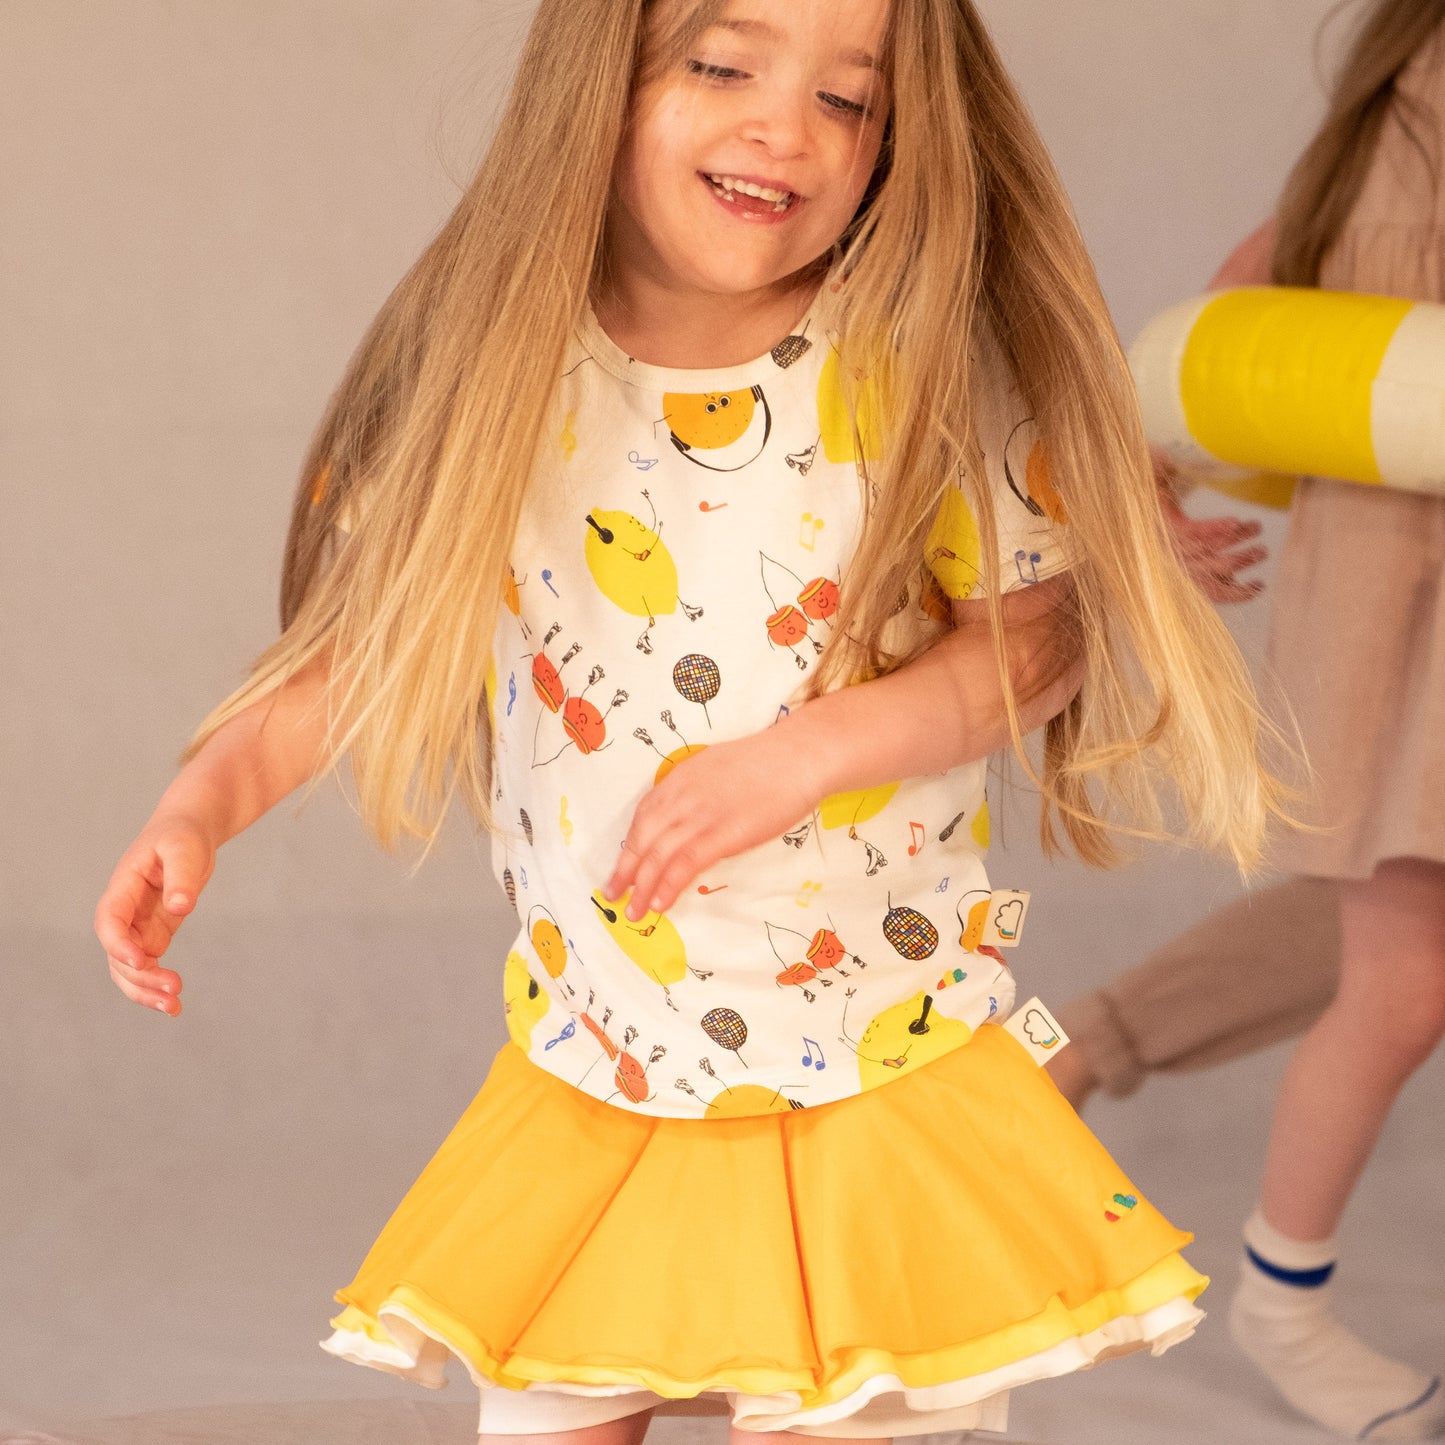 女童裝有機棉 - 橙黃色半截裙連短褲